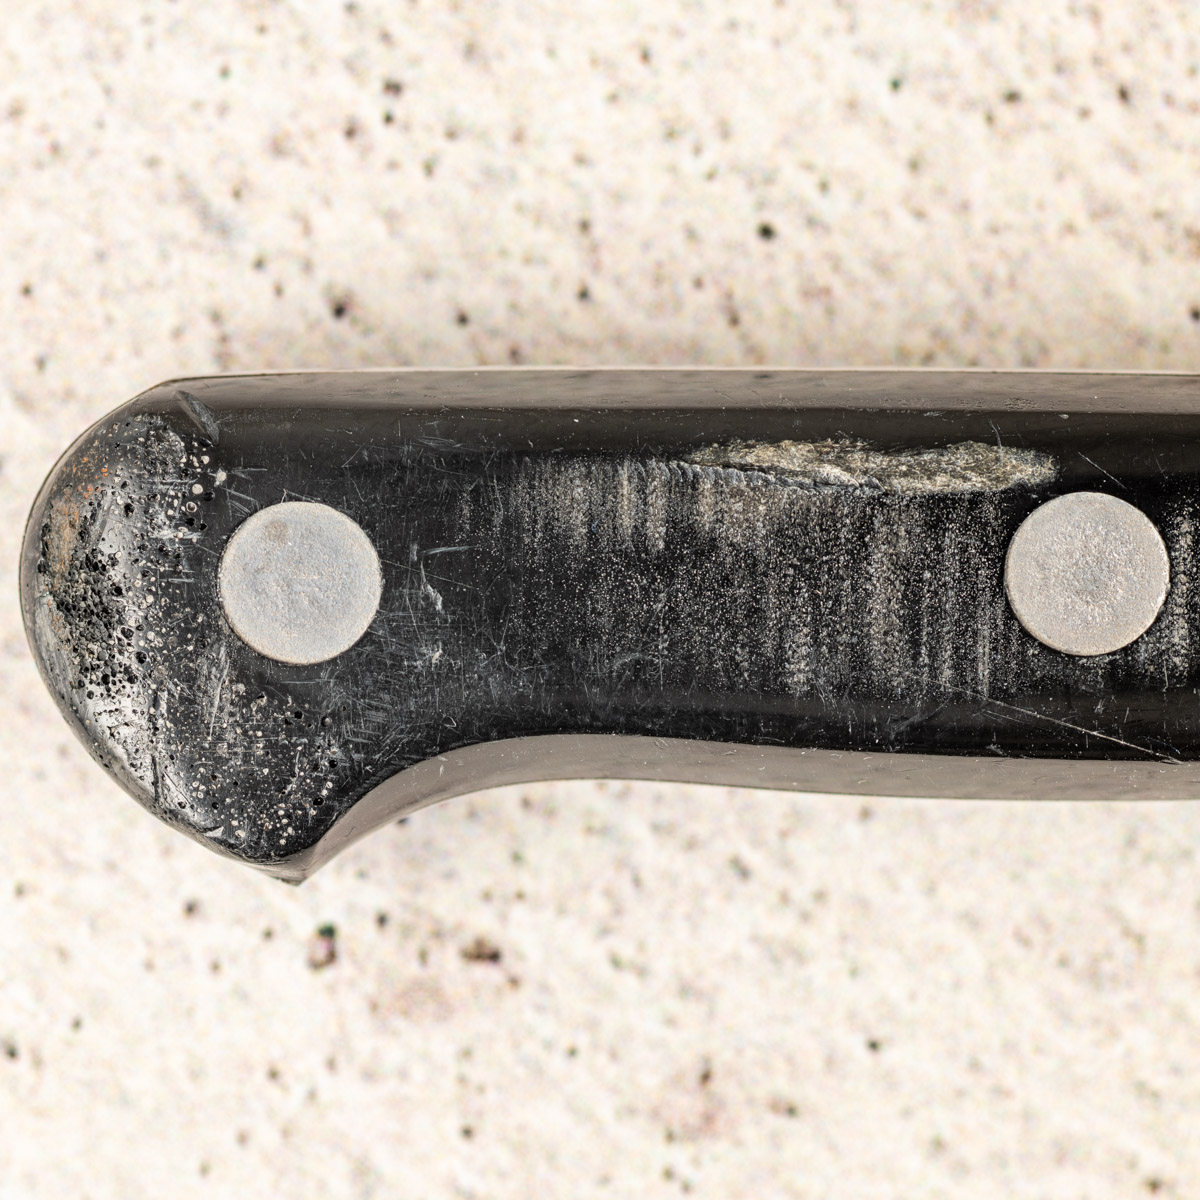 Dishwasher damage on German paring knife.